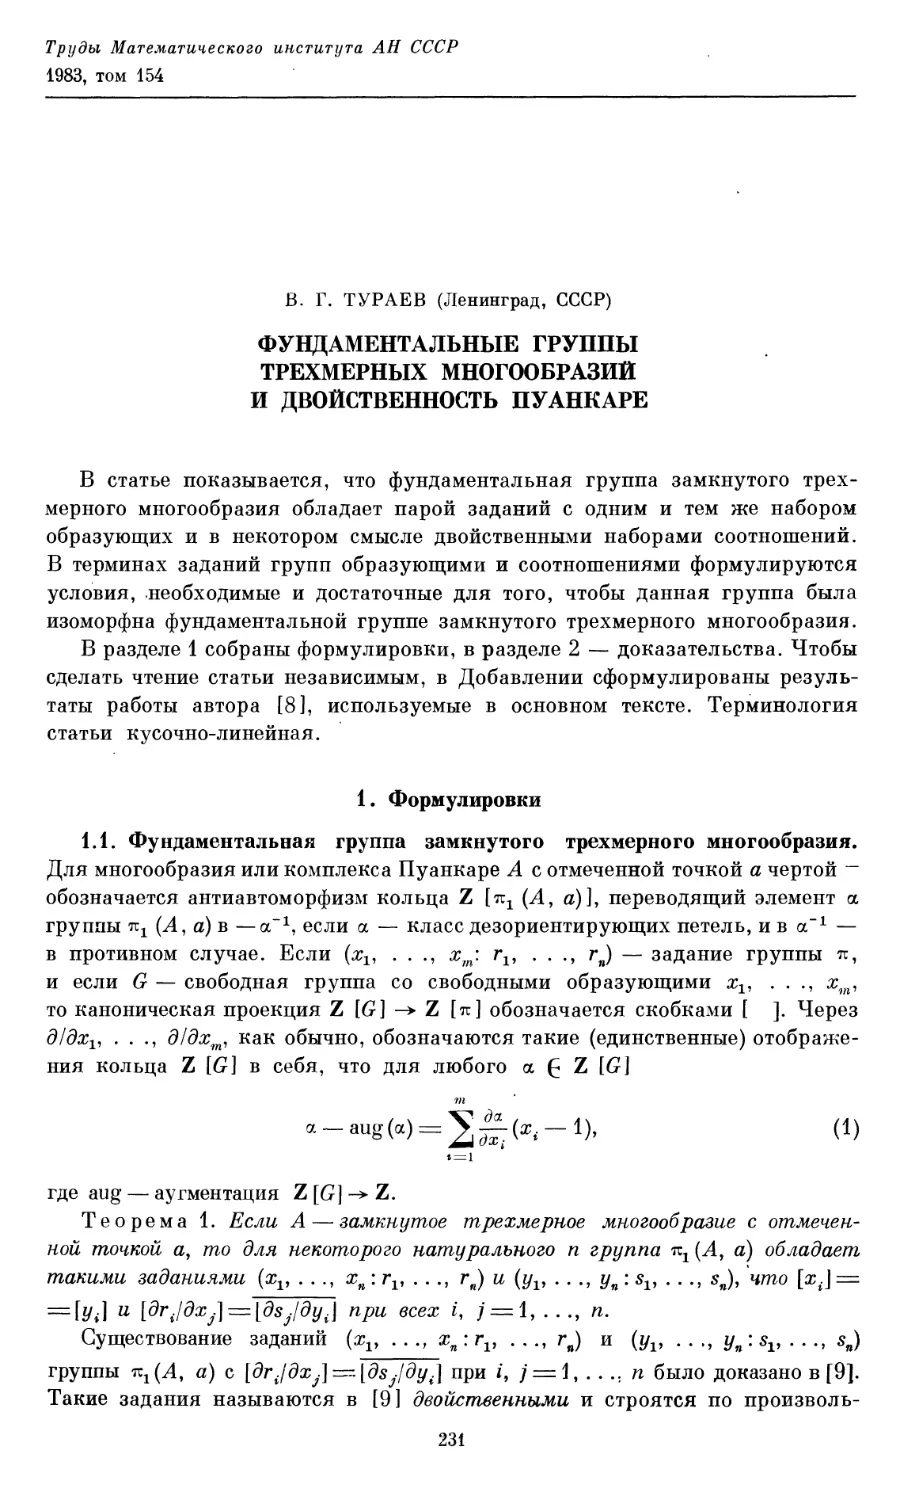 Тураев В. Г. Фундаментальные группы трехмерных многообразий и двойственность Пуанкаре